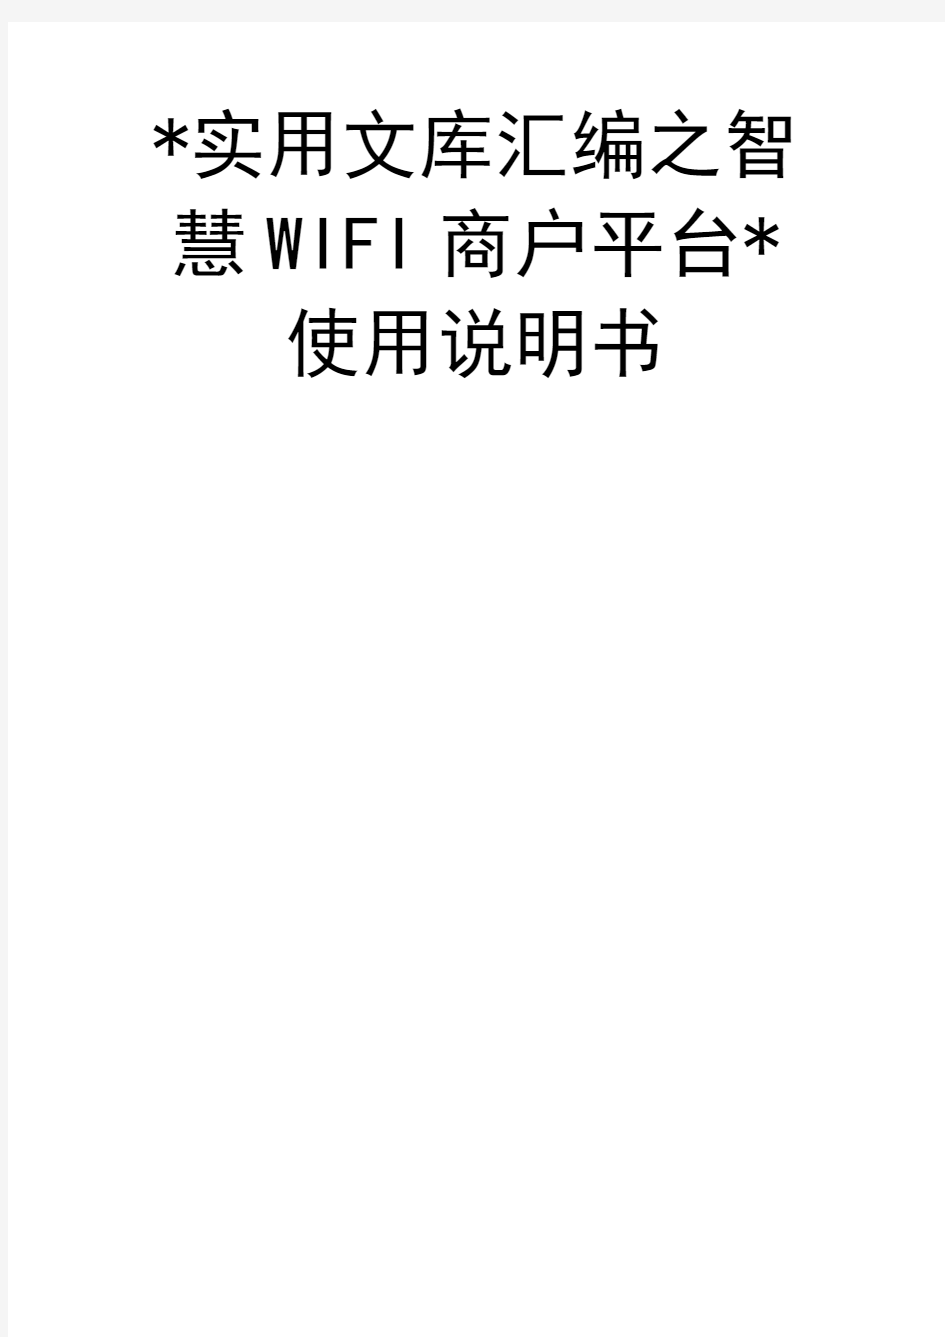 实用文库汇编之智慧WIFI商户平台使用说明